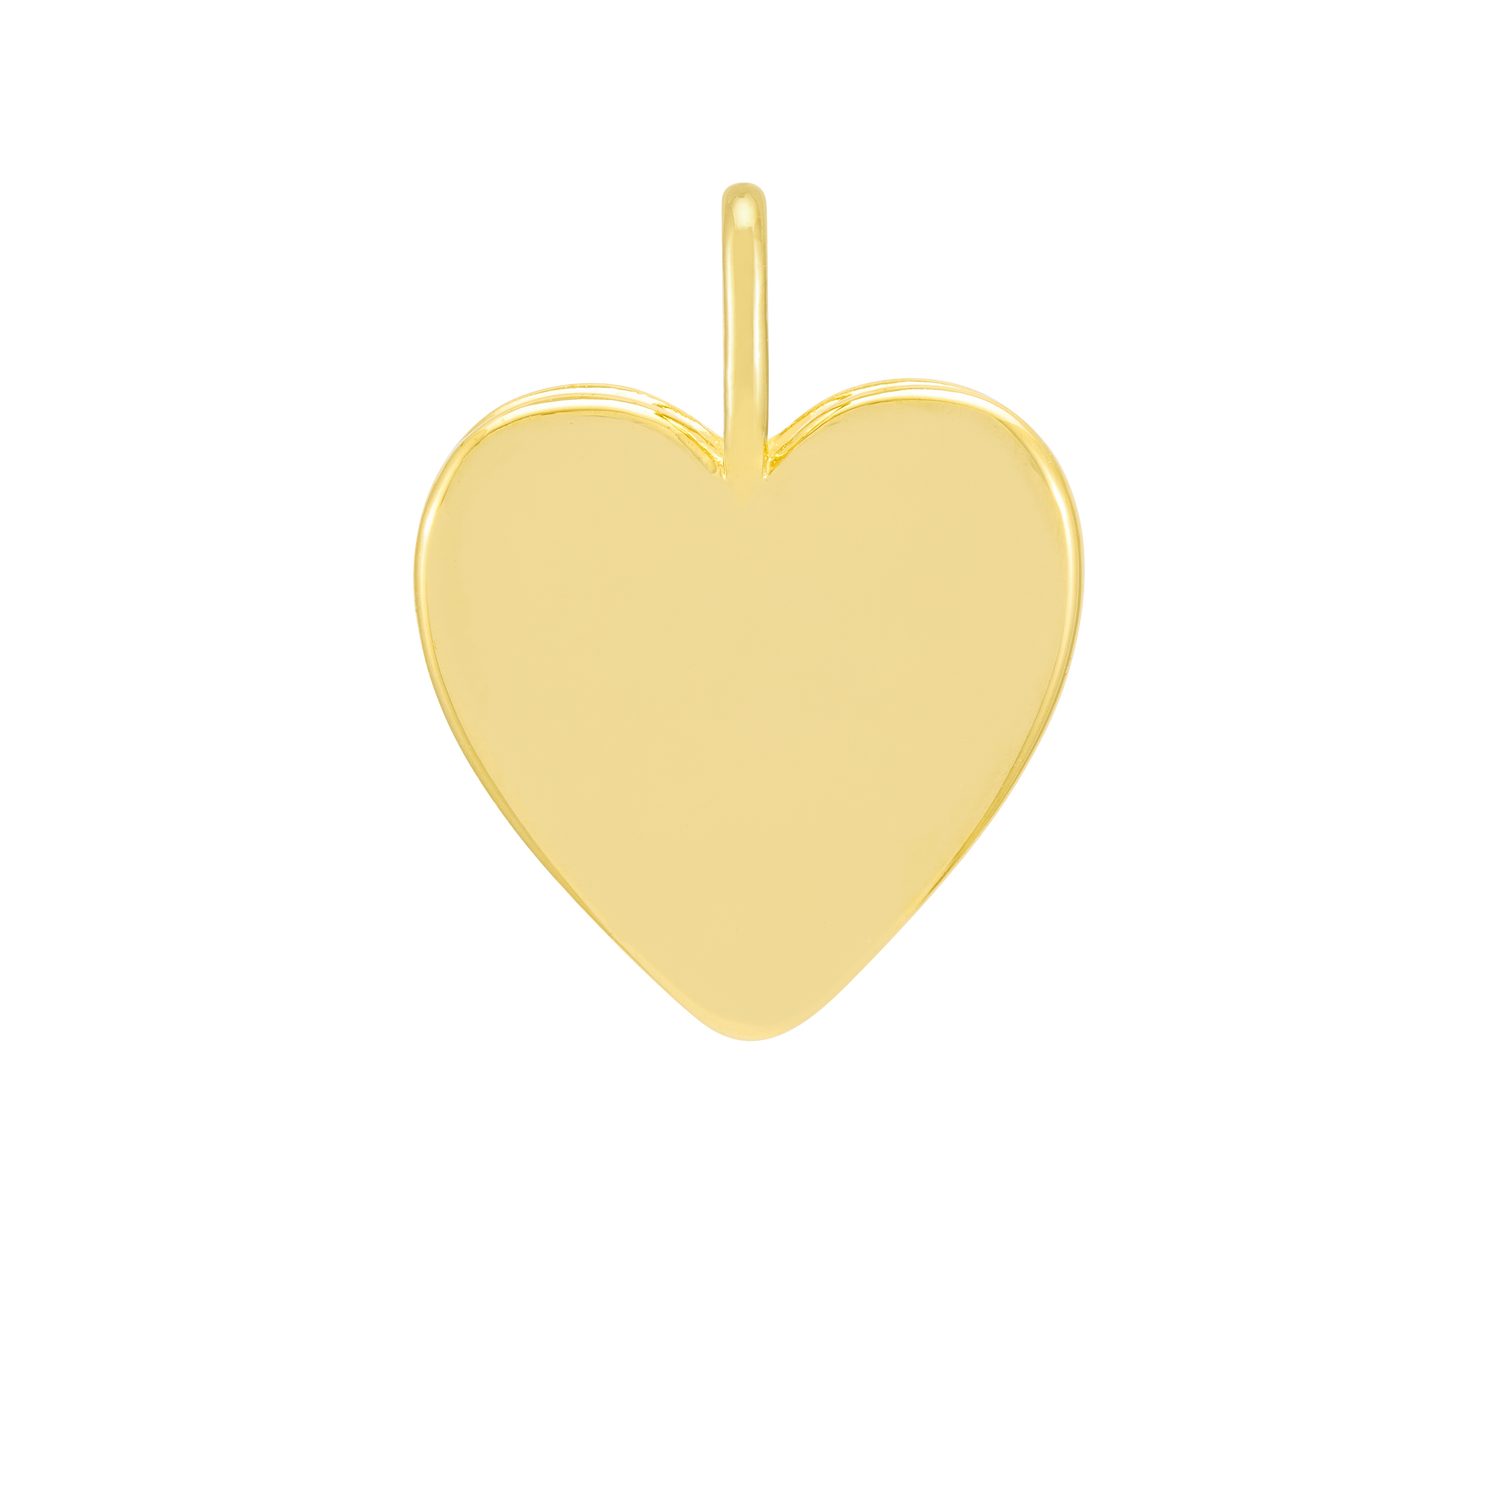 customiser-image customiser-gold-text customiser-engrave-heart